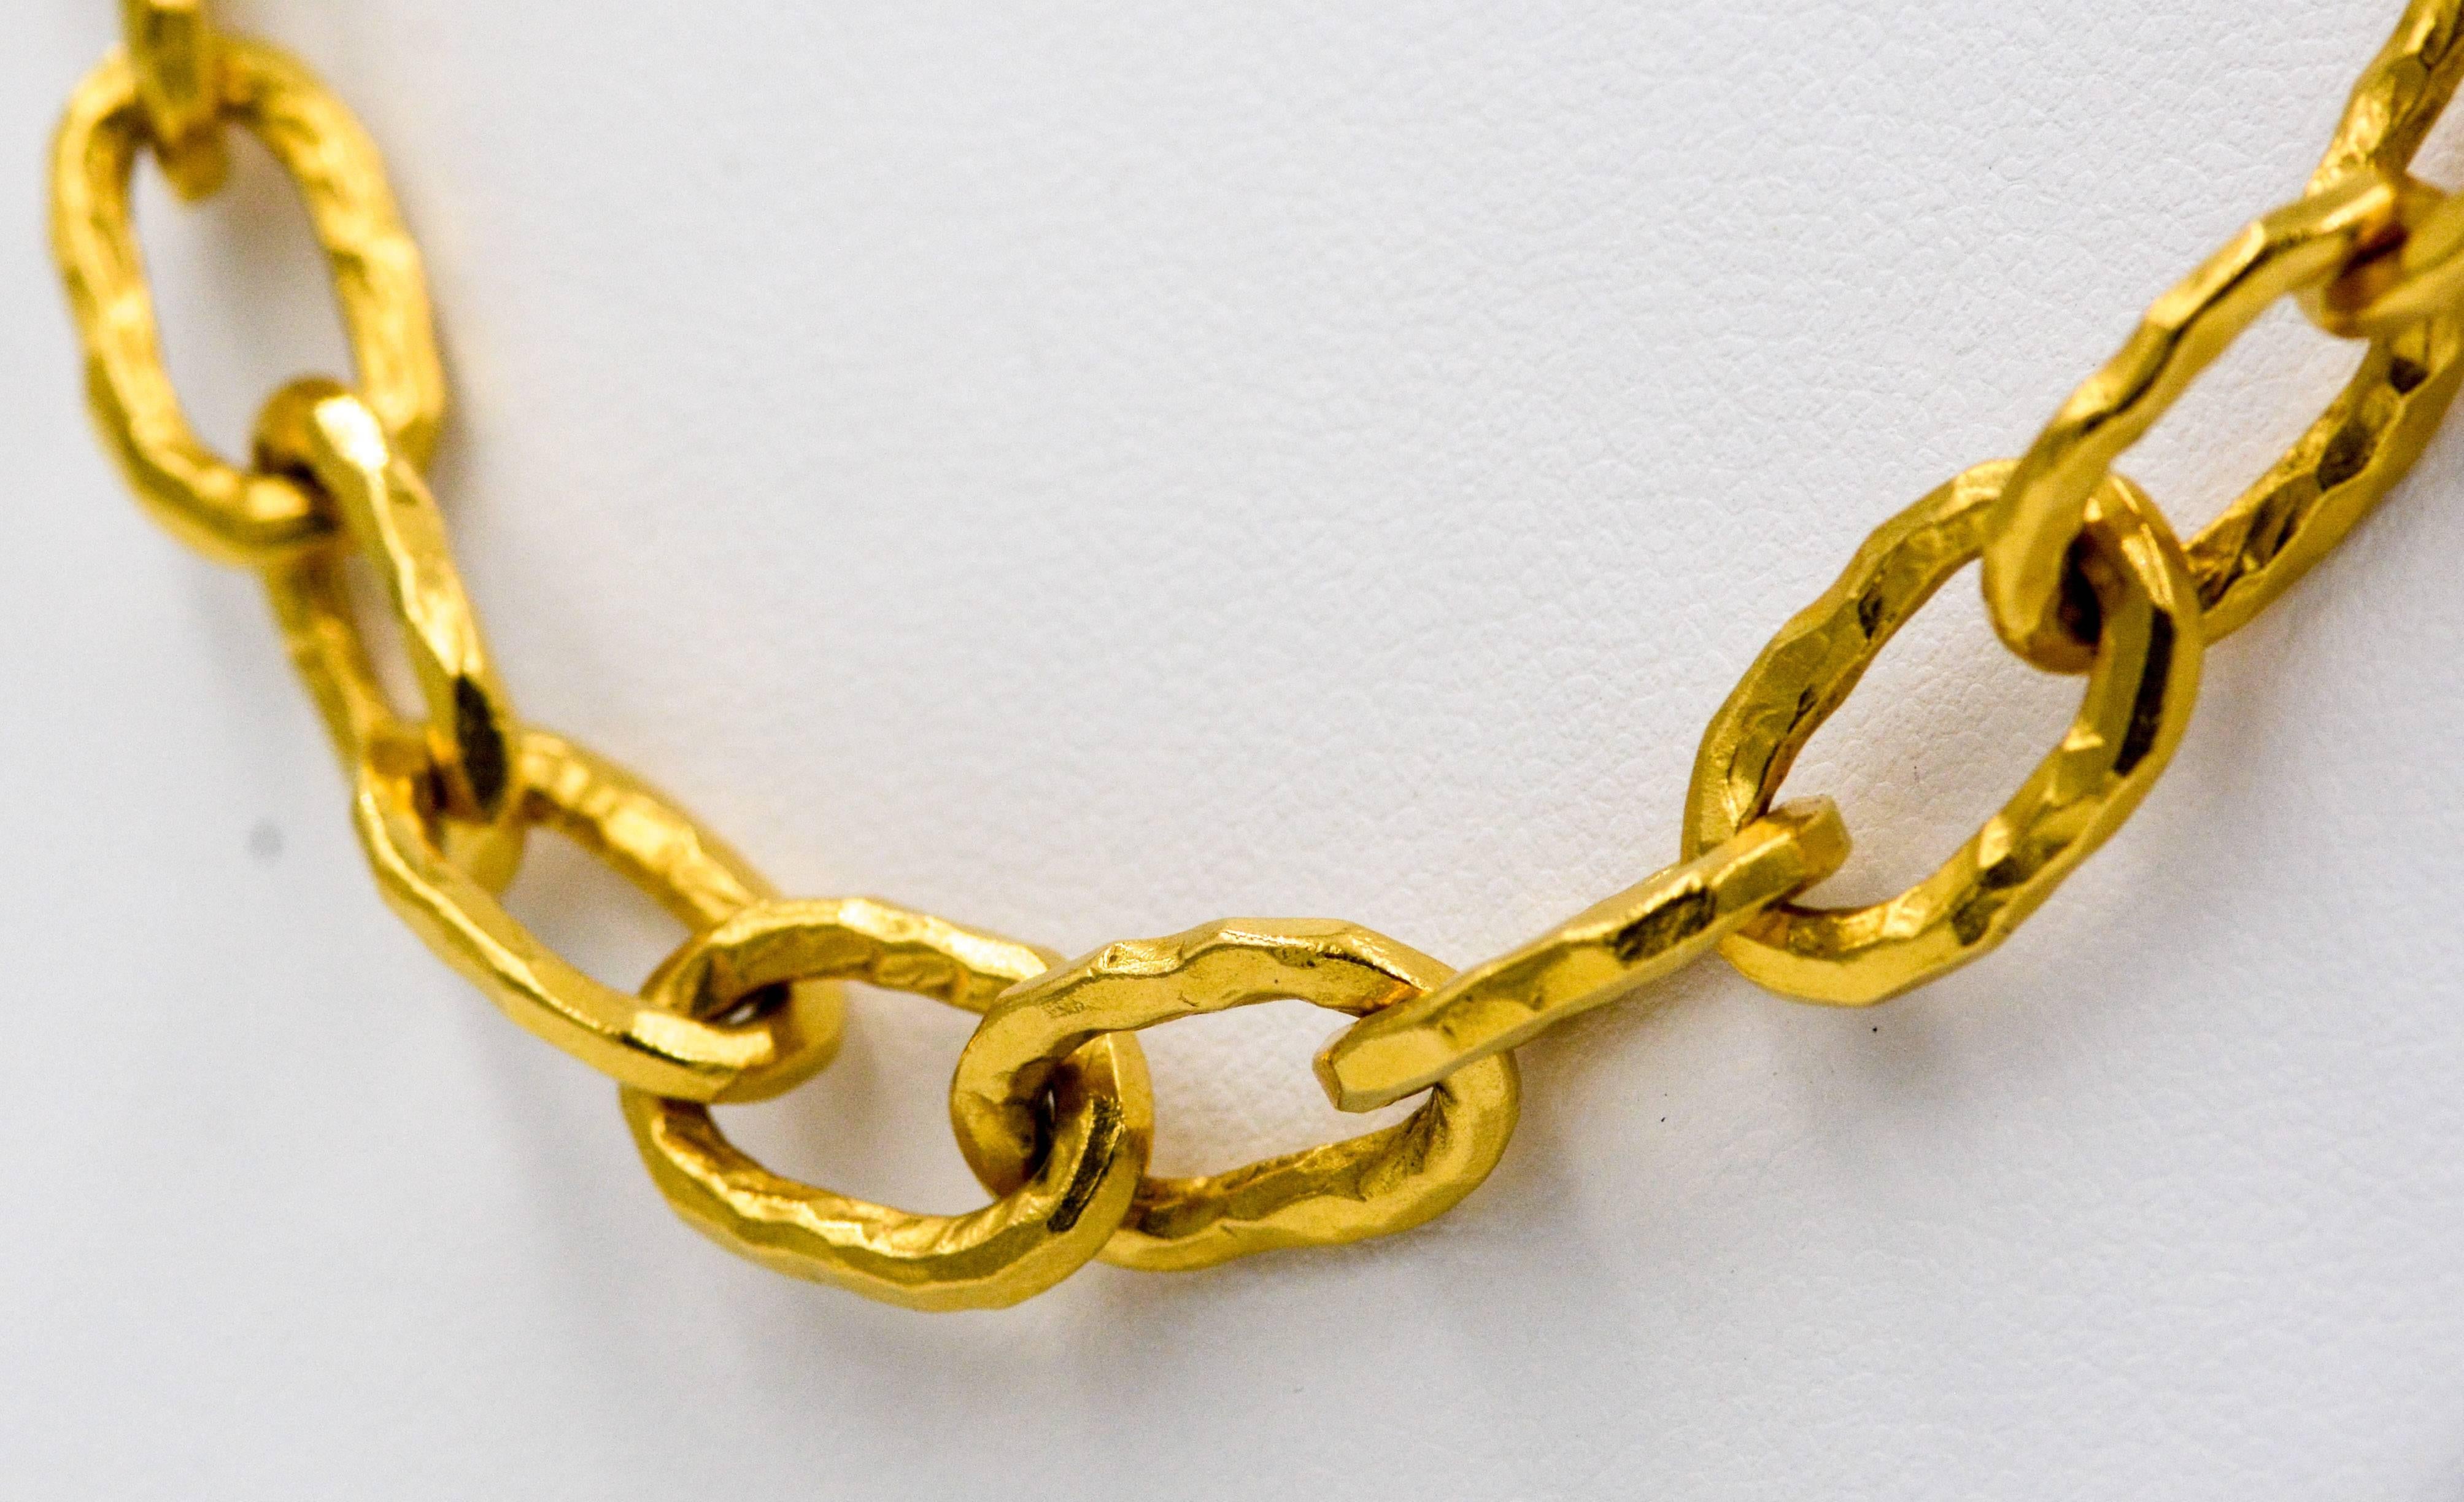 22 karat gold chain